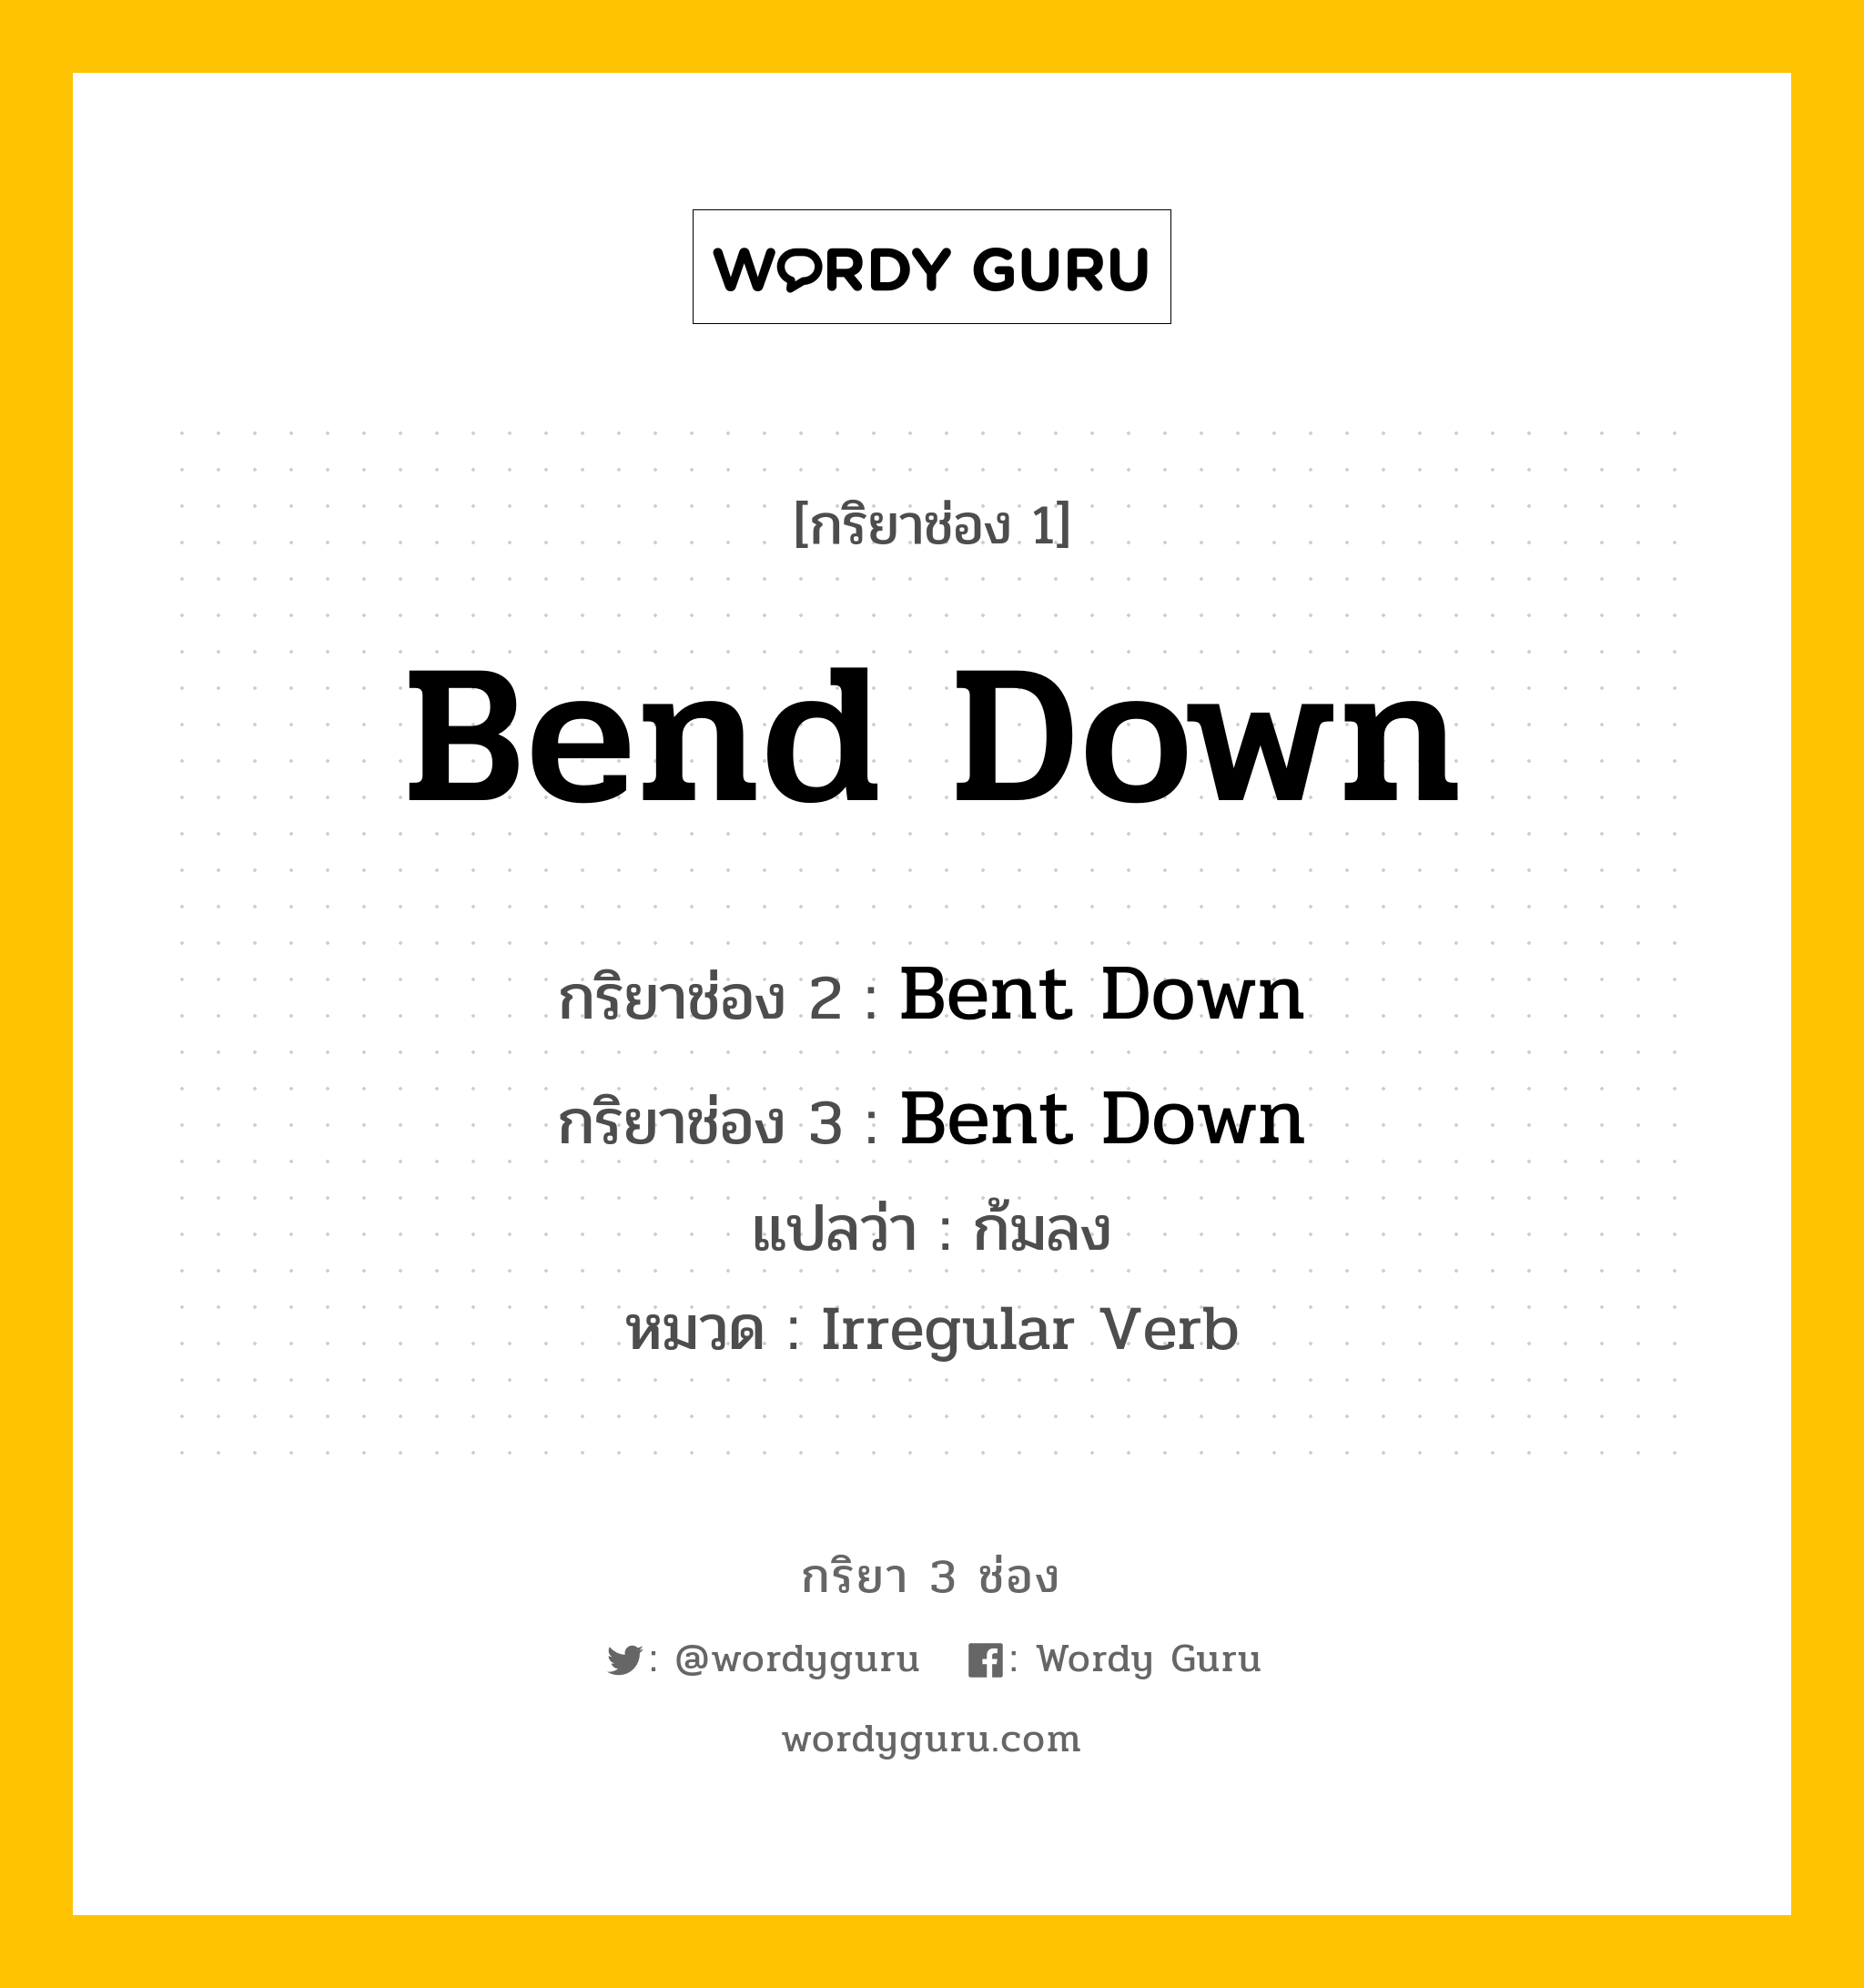 Bend Down มีกริยา 3 ช่องอะไรบ้าง? คำศัพท์ในกลุ่มประเภท Irregular Verb, กริยาช่อง 1 Bend Down กริยาช่อง 2 Bent Down กริยาช่อง 3 Bent Down แปลว่า ก้มลง หมวด Irregular Verb หมวด Irregular Verb